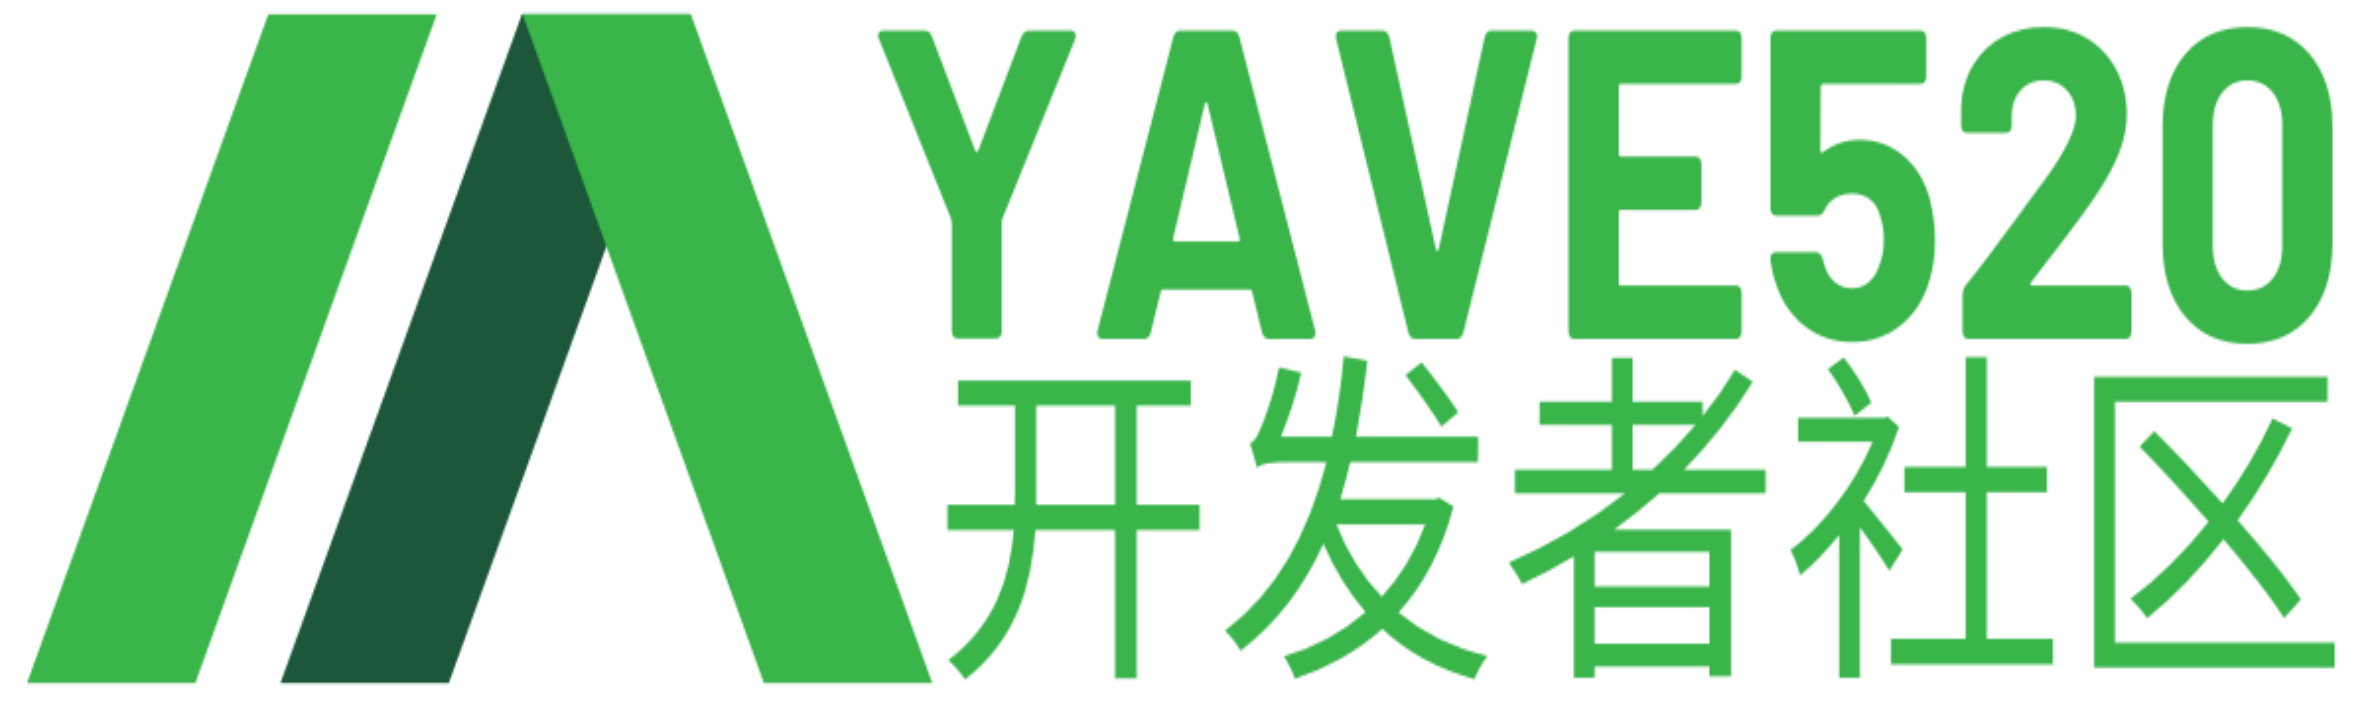 Yave520-专业开发者社区